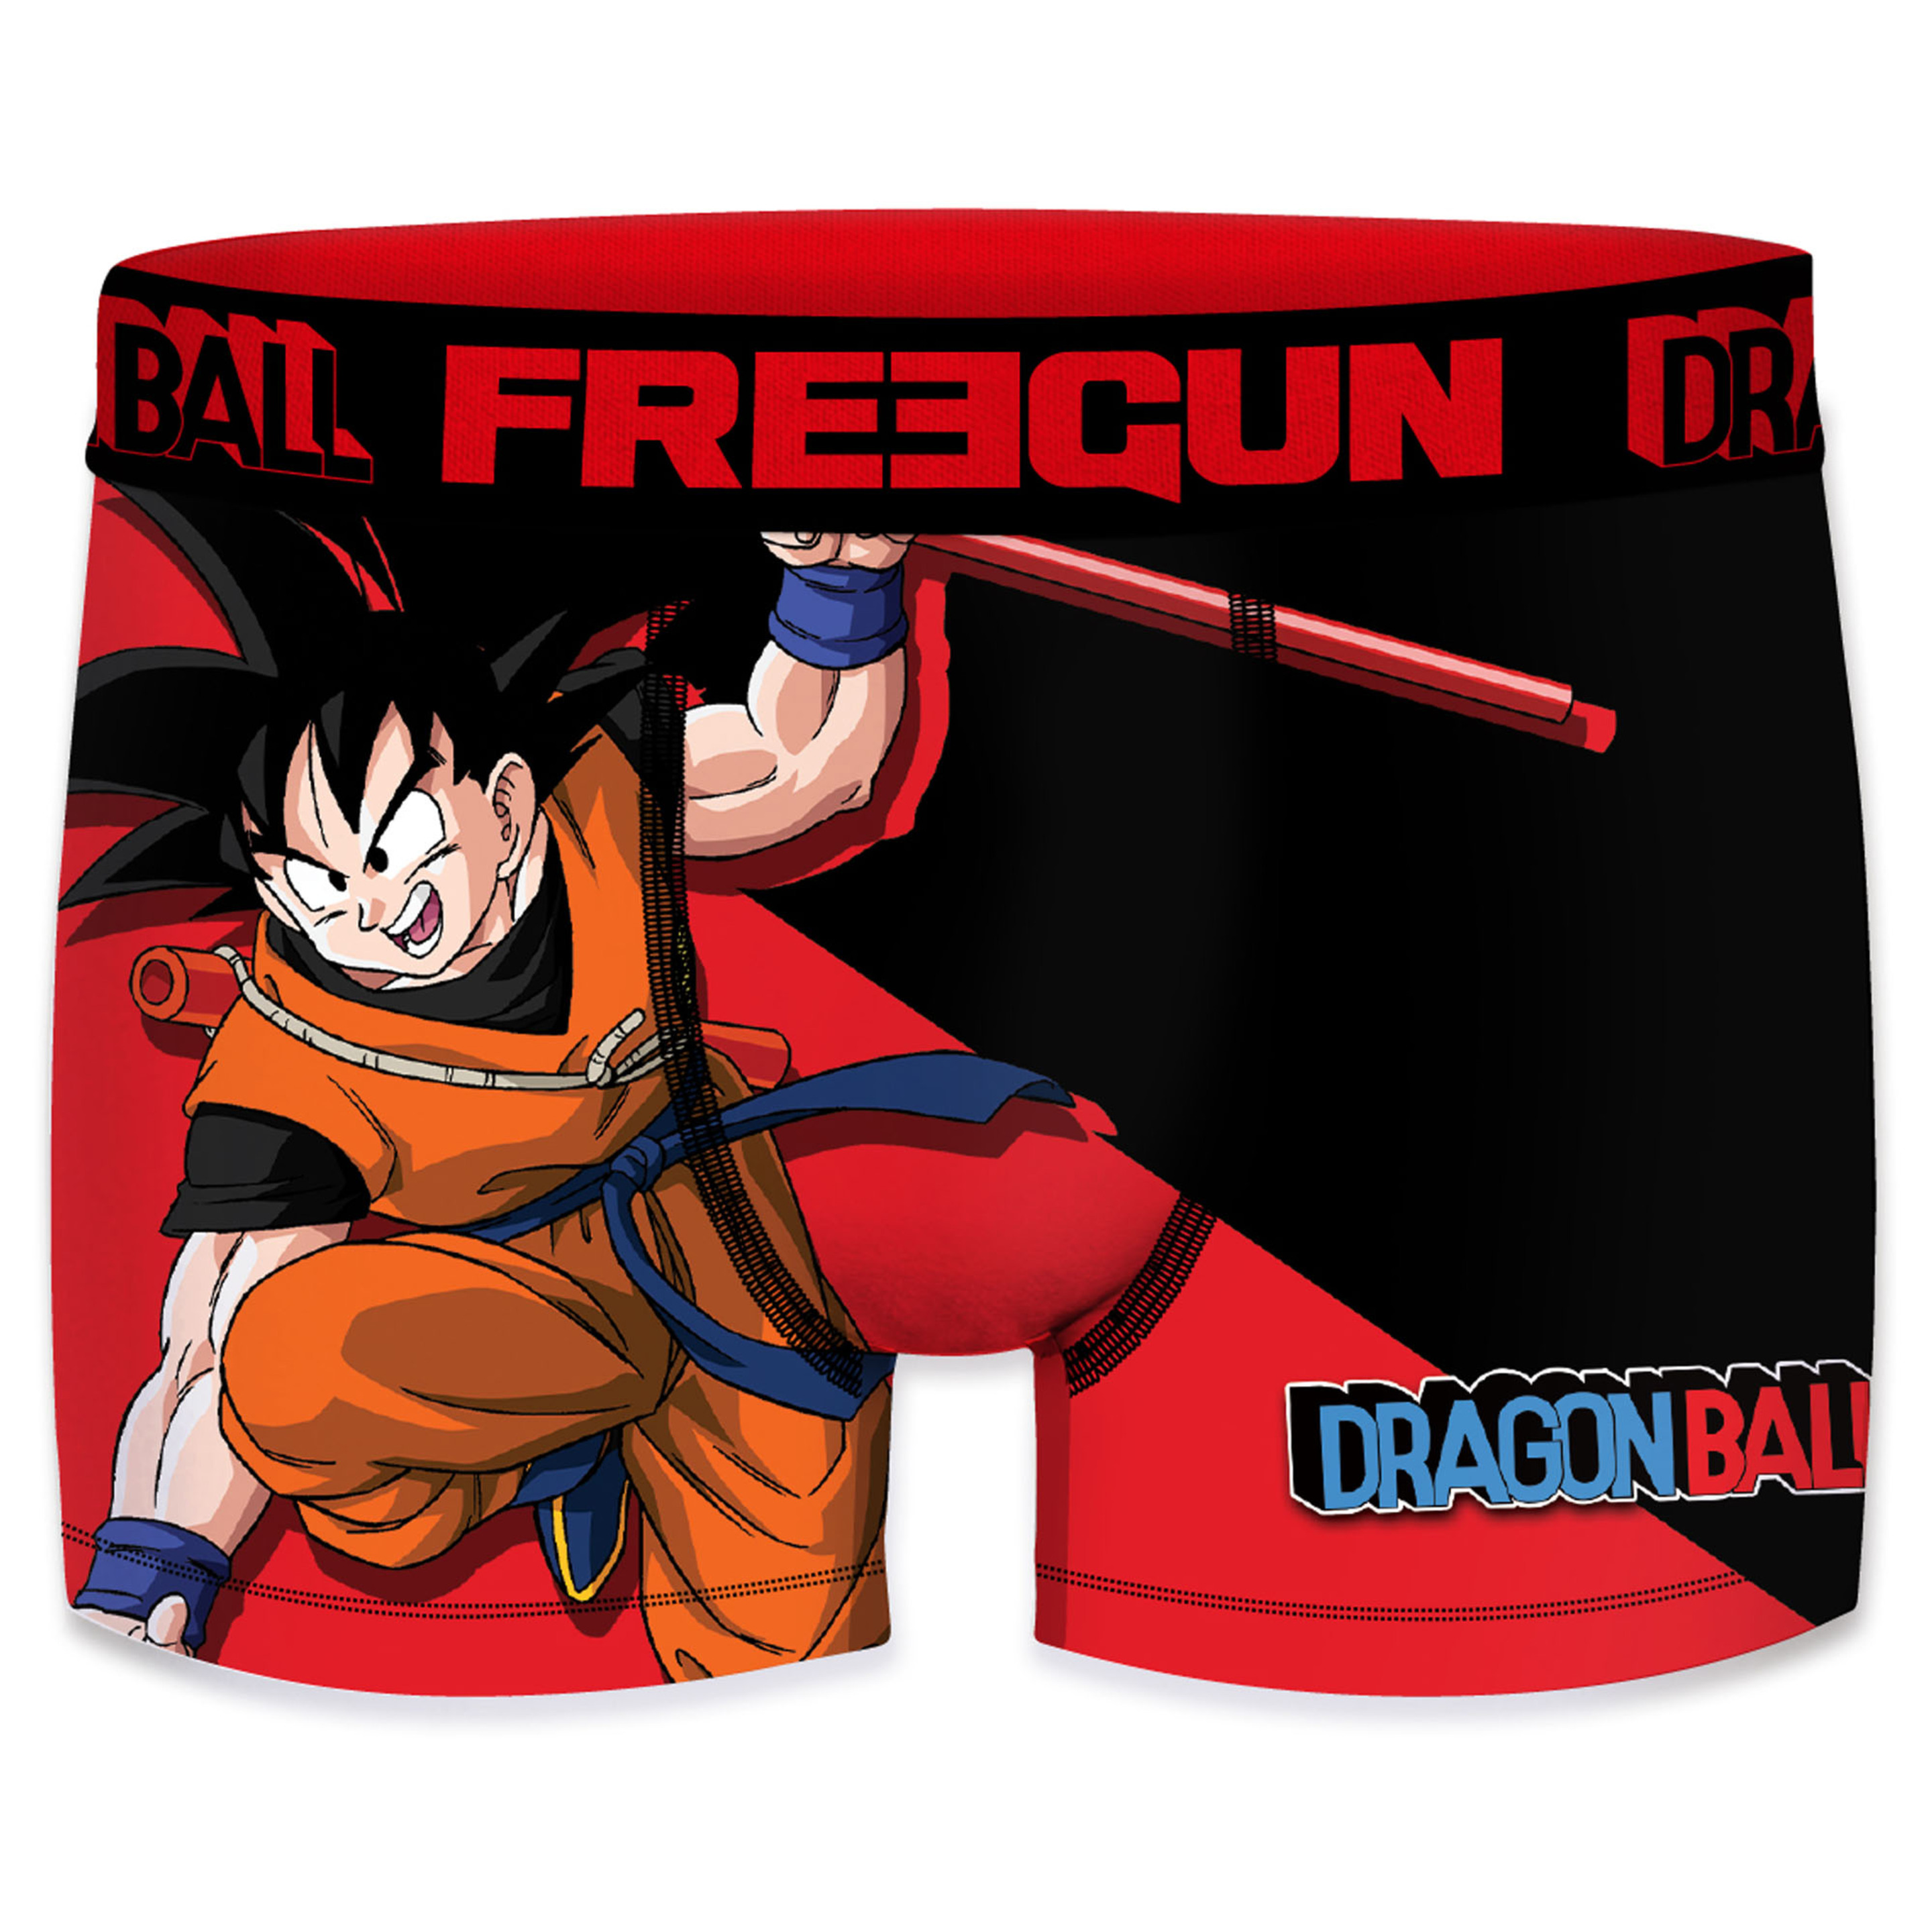 Calzoncillo Freegun Dragon Ball - Multicolor  MKP